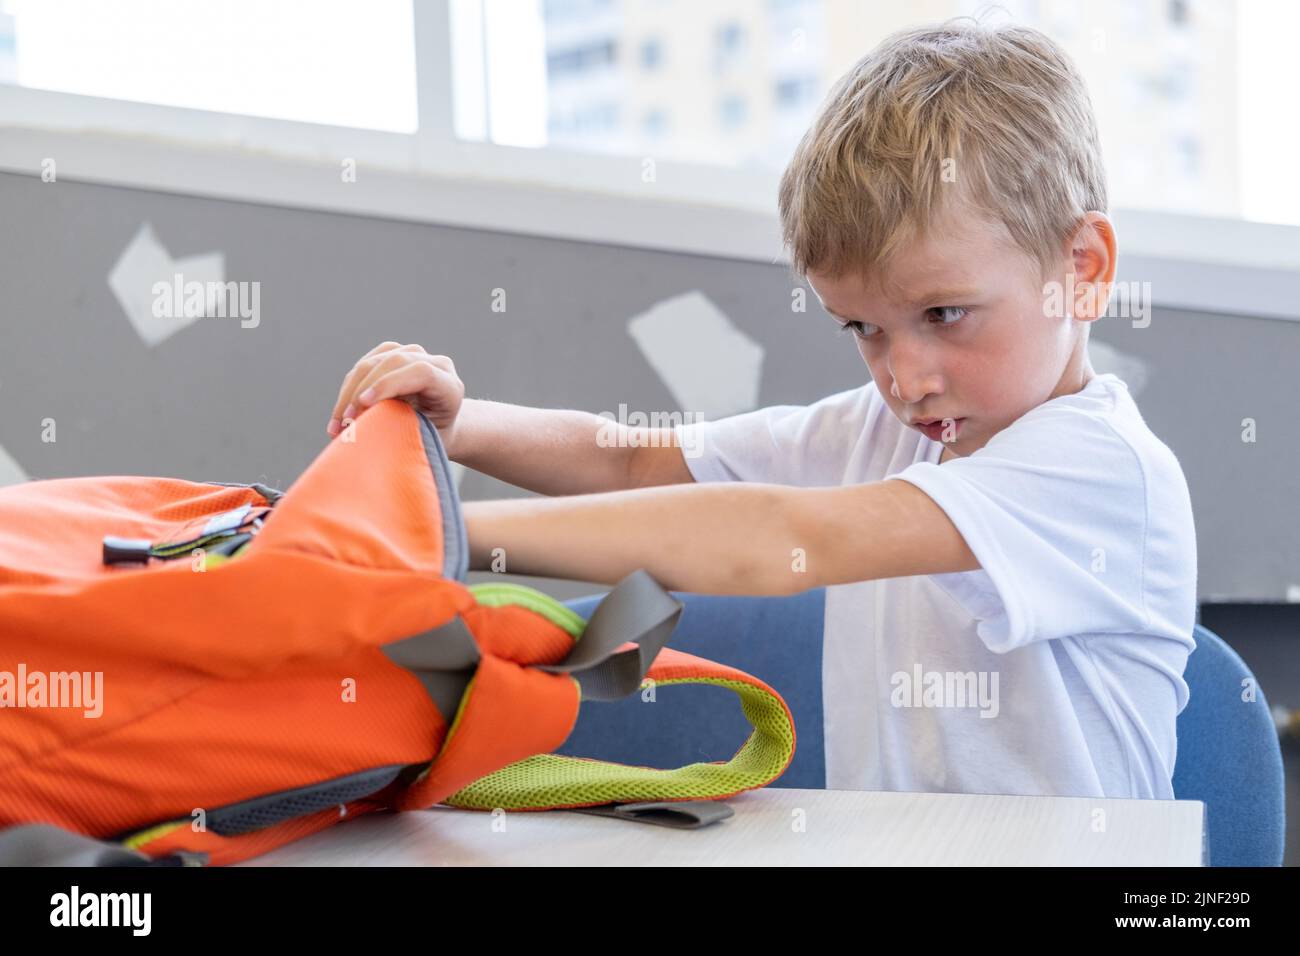 El estudiante saca papelería, libros de una mochila. Un niño mira en una bolsa de la escuela. De vuelta a la escuela. Educación escolar y preescolar. Foto de stock